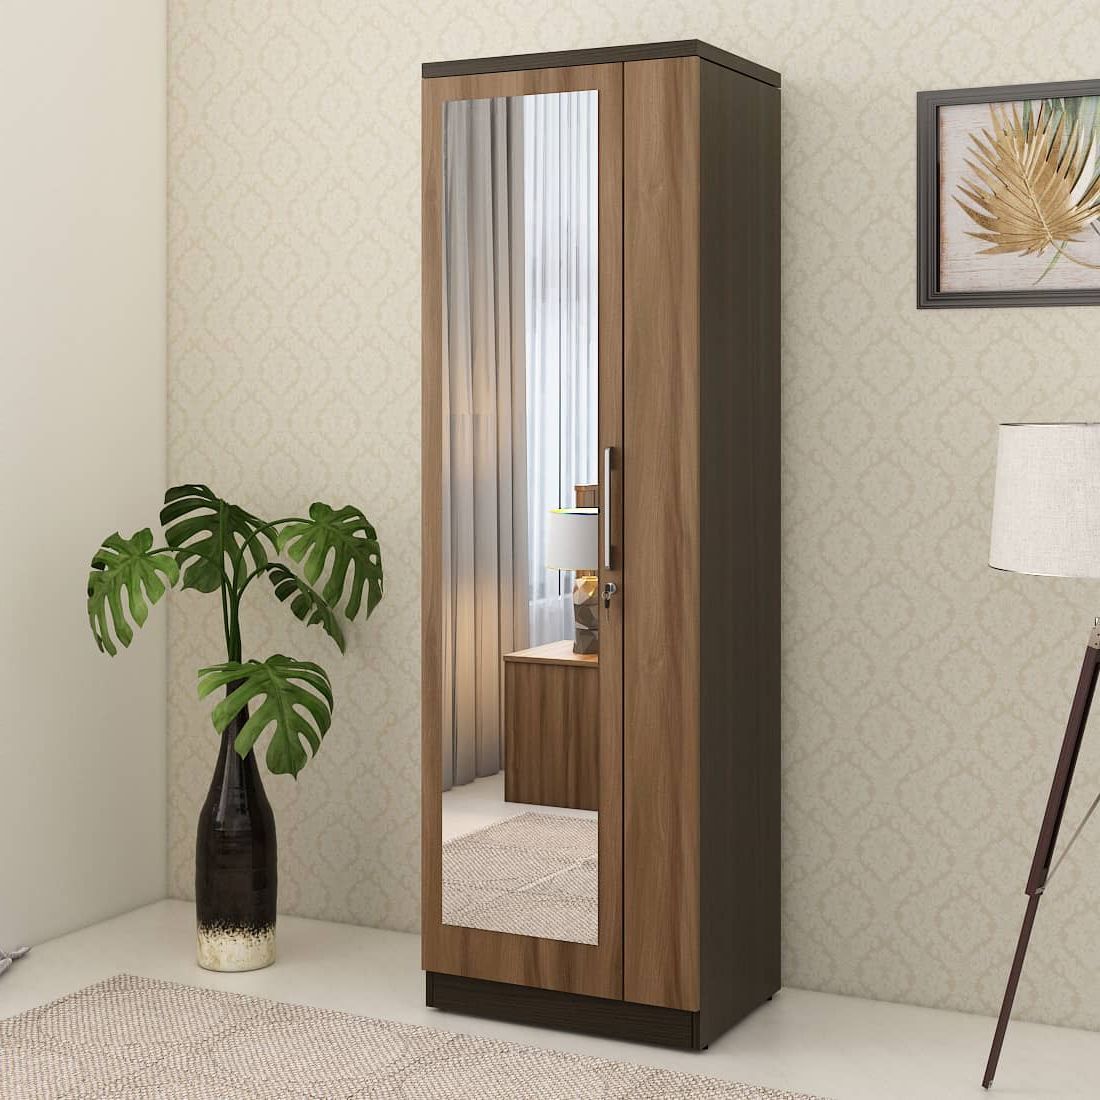 Kosmo Ken 1 Door Wardrobe With Mirror Walnut Bronze Woodpore | Spacewood  Ecommerce Pertaining To Single Door Mirrored Wardrobes (View 2 of 20)